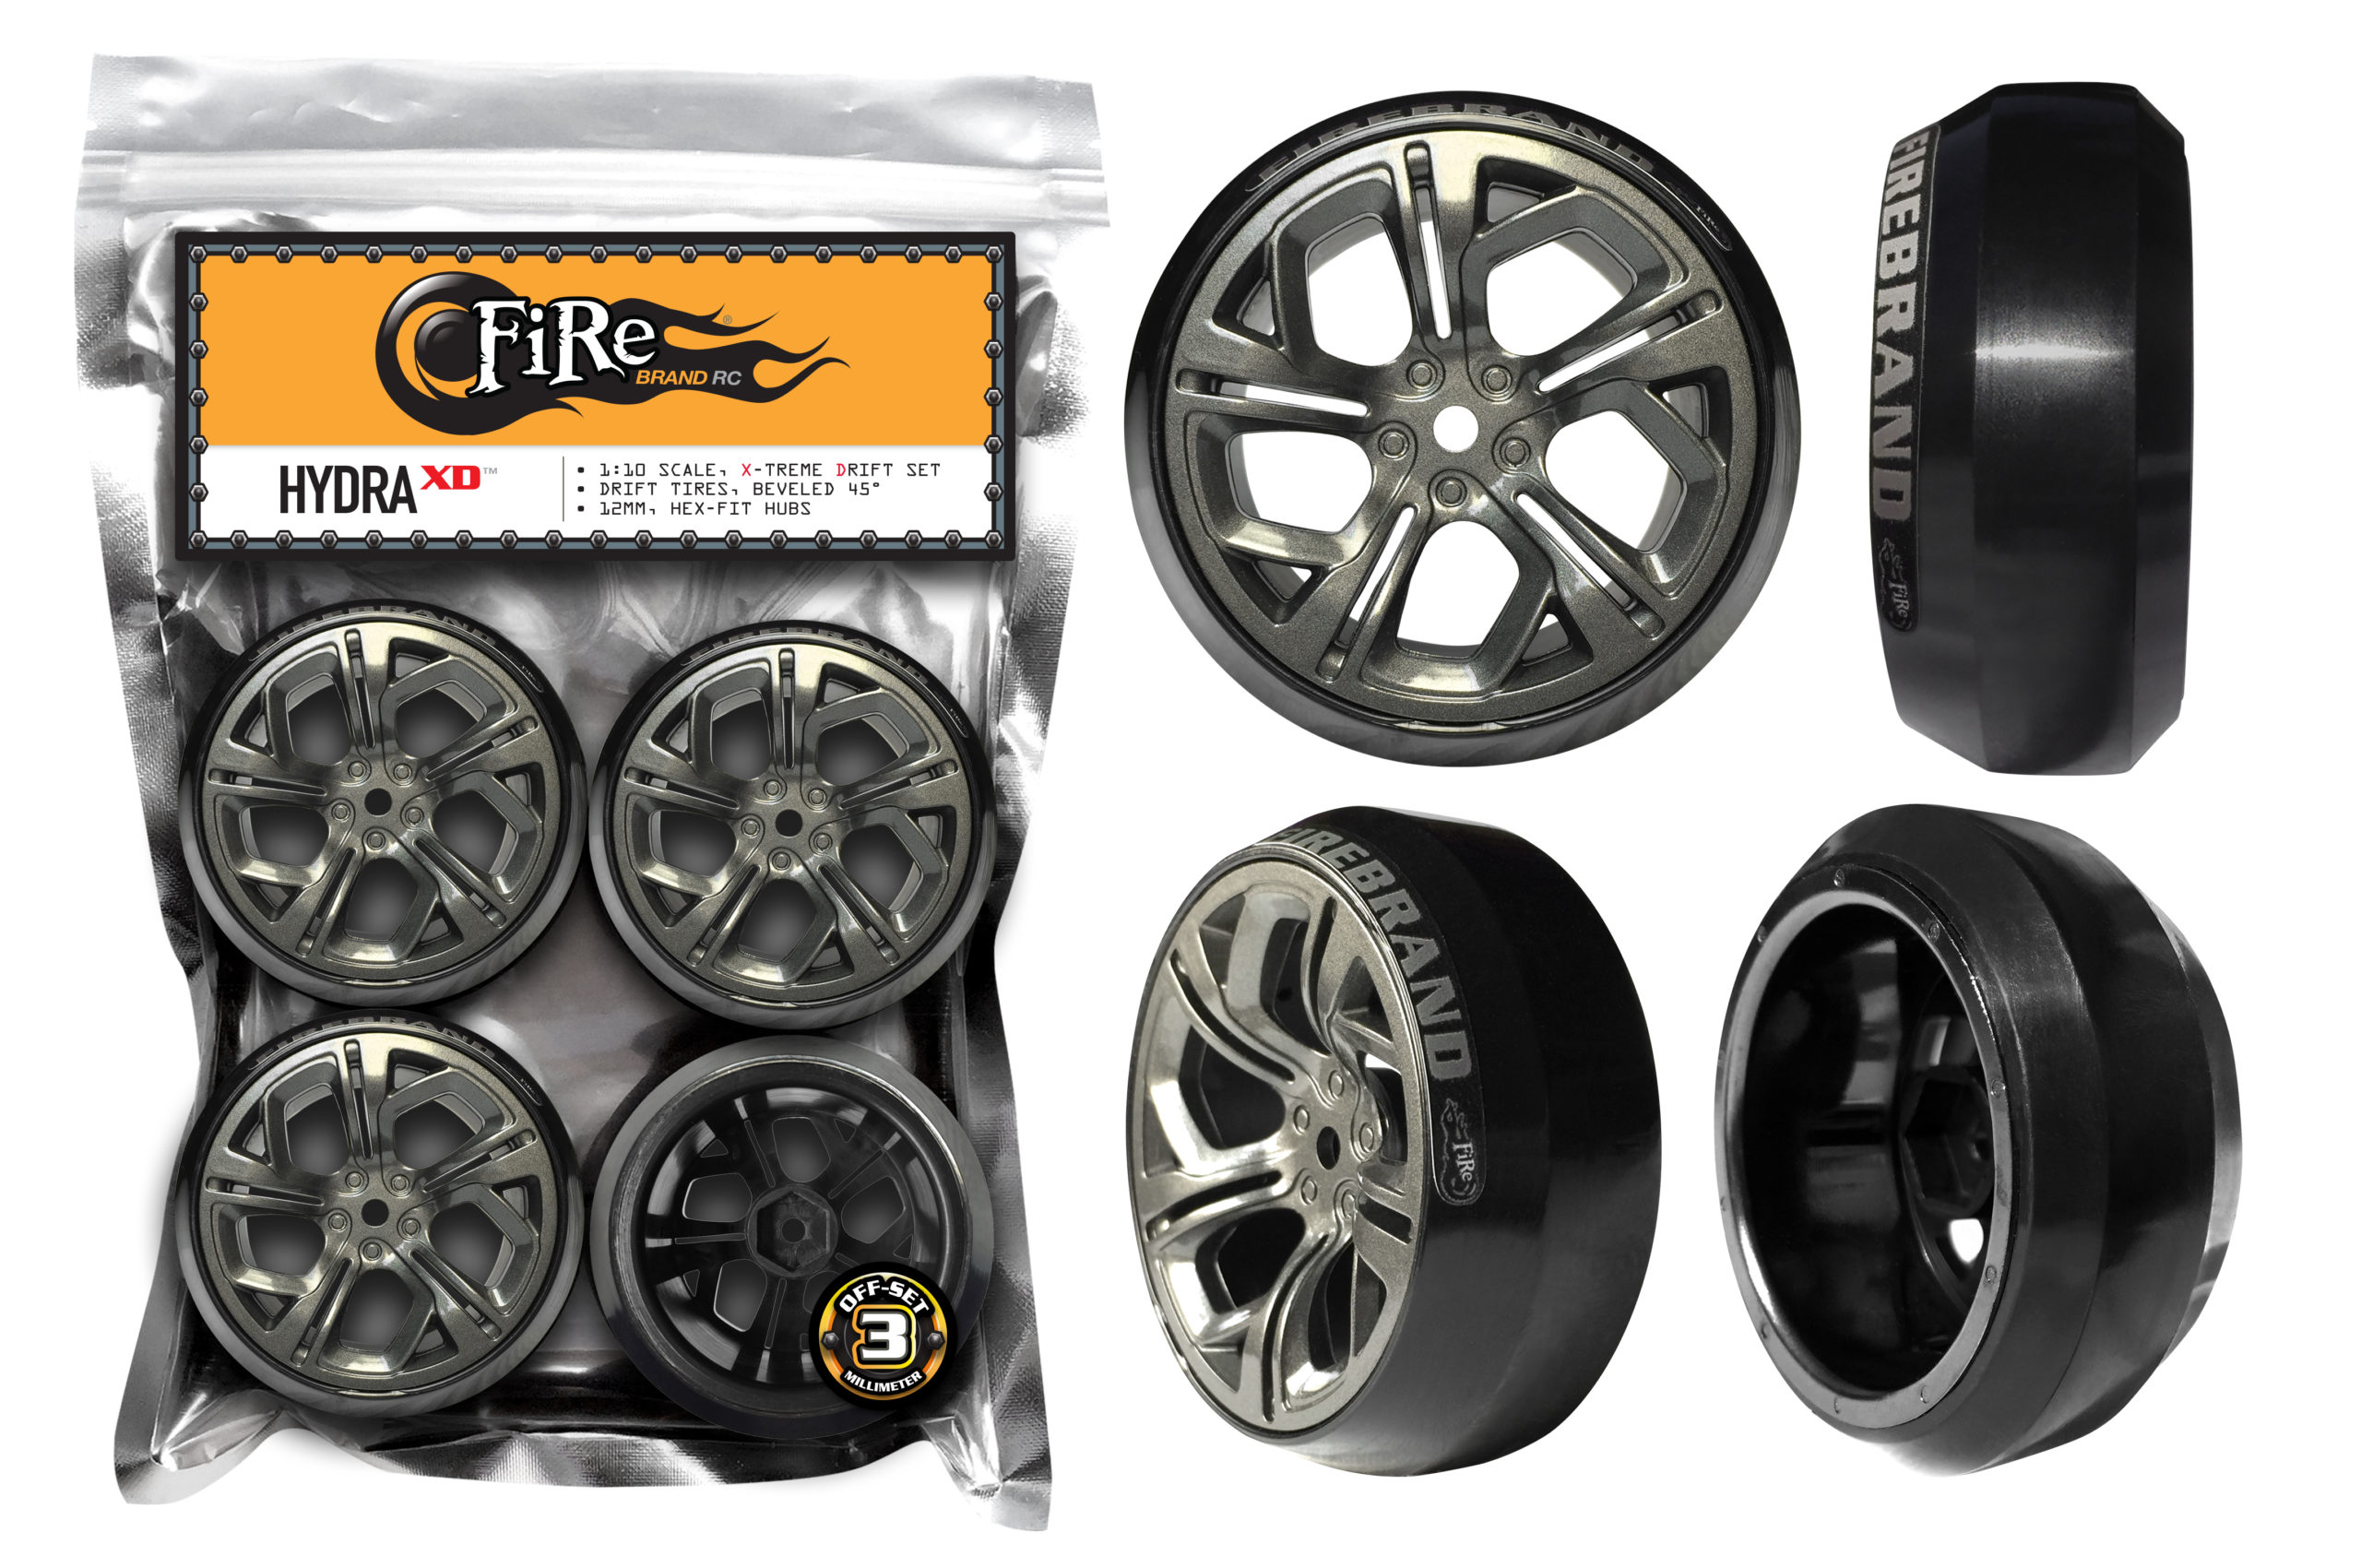 Drift wheels. Drift Tires. Колесо Vortex hydra Wheel 5114-024. DC RC Wheels. RC Drift Wheels eu.